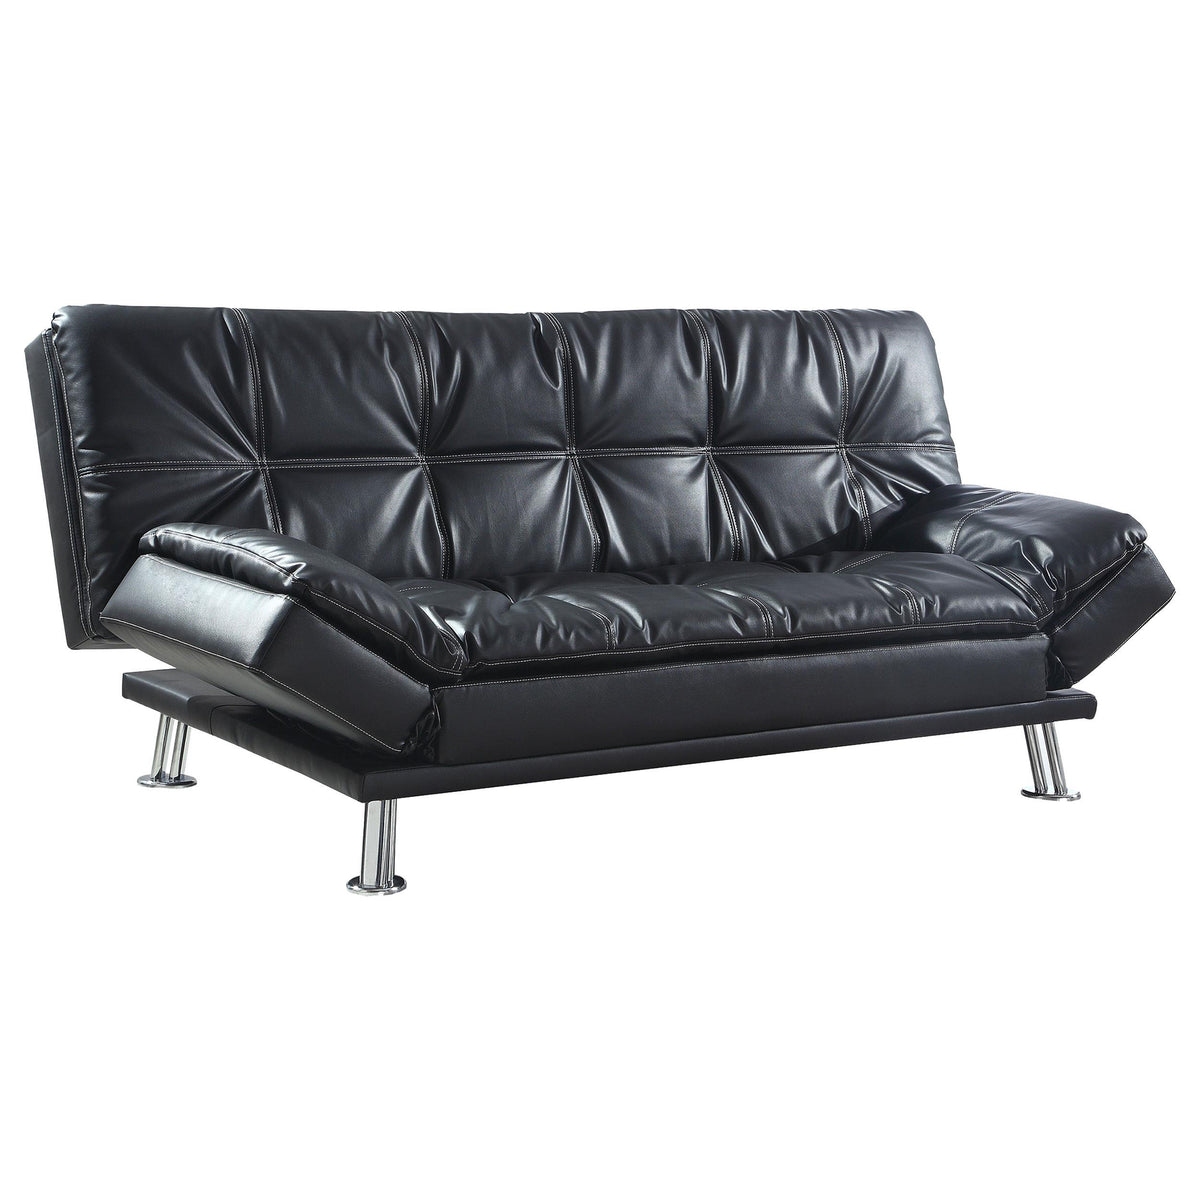 Dilleston Tufted Back Upholstered Sofa Bed Black  Half Price Furniture